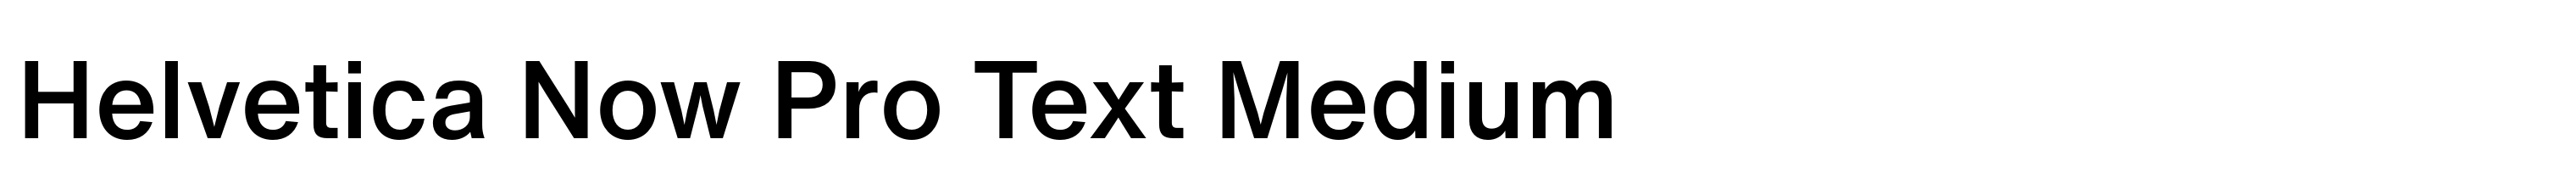 Helvetica Now Pro Text Medium